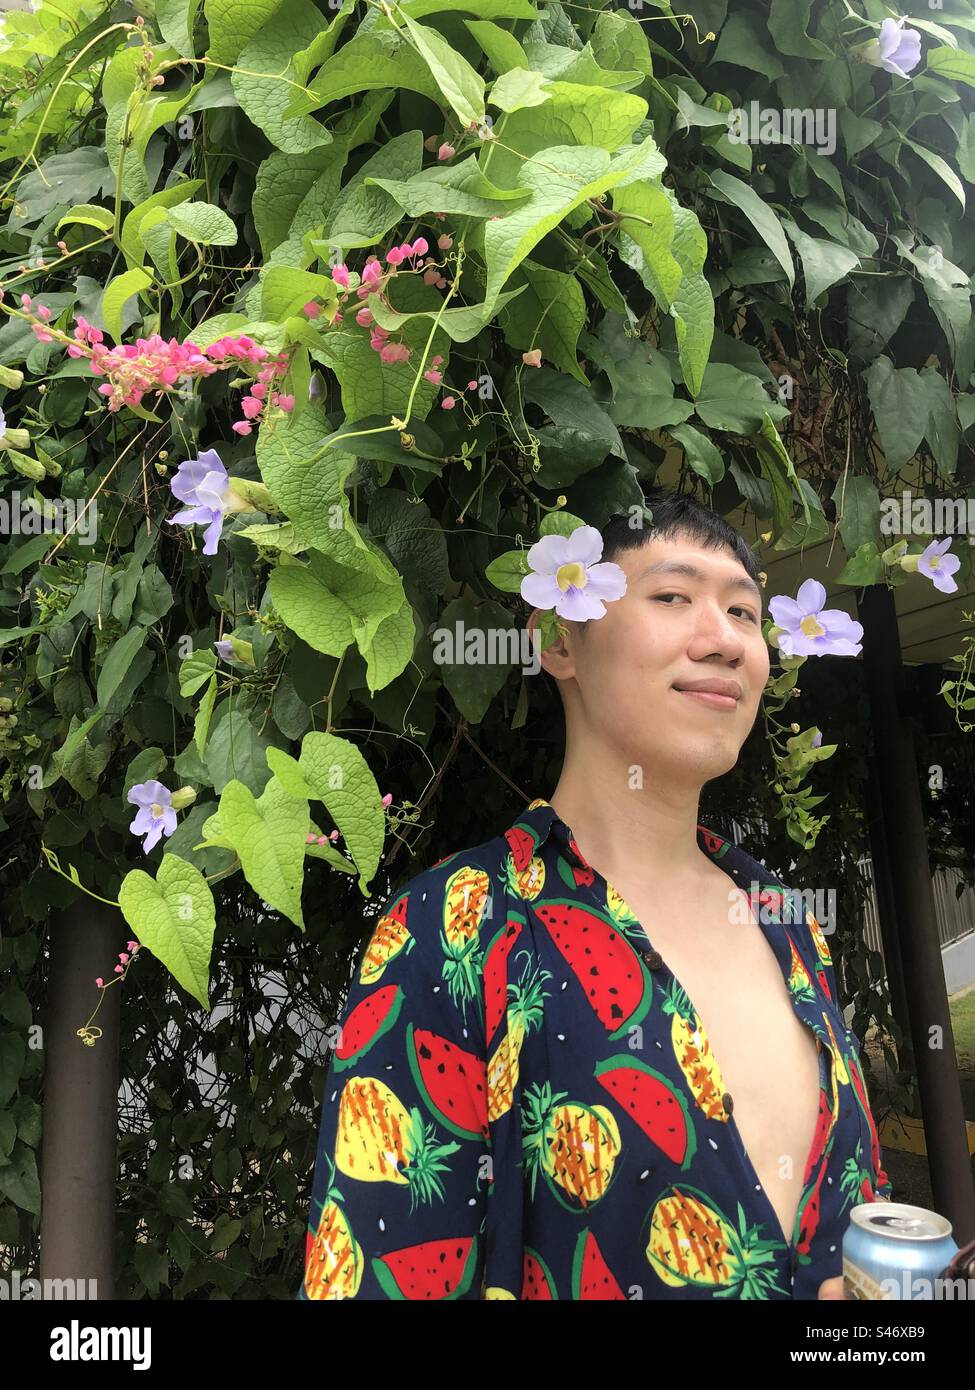 Gutaussehender schwuler Kerl, der tropische Früchte vor einem Blumenbaum trägt Stockfoto